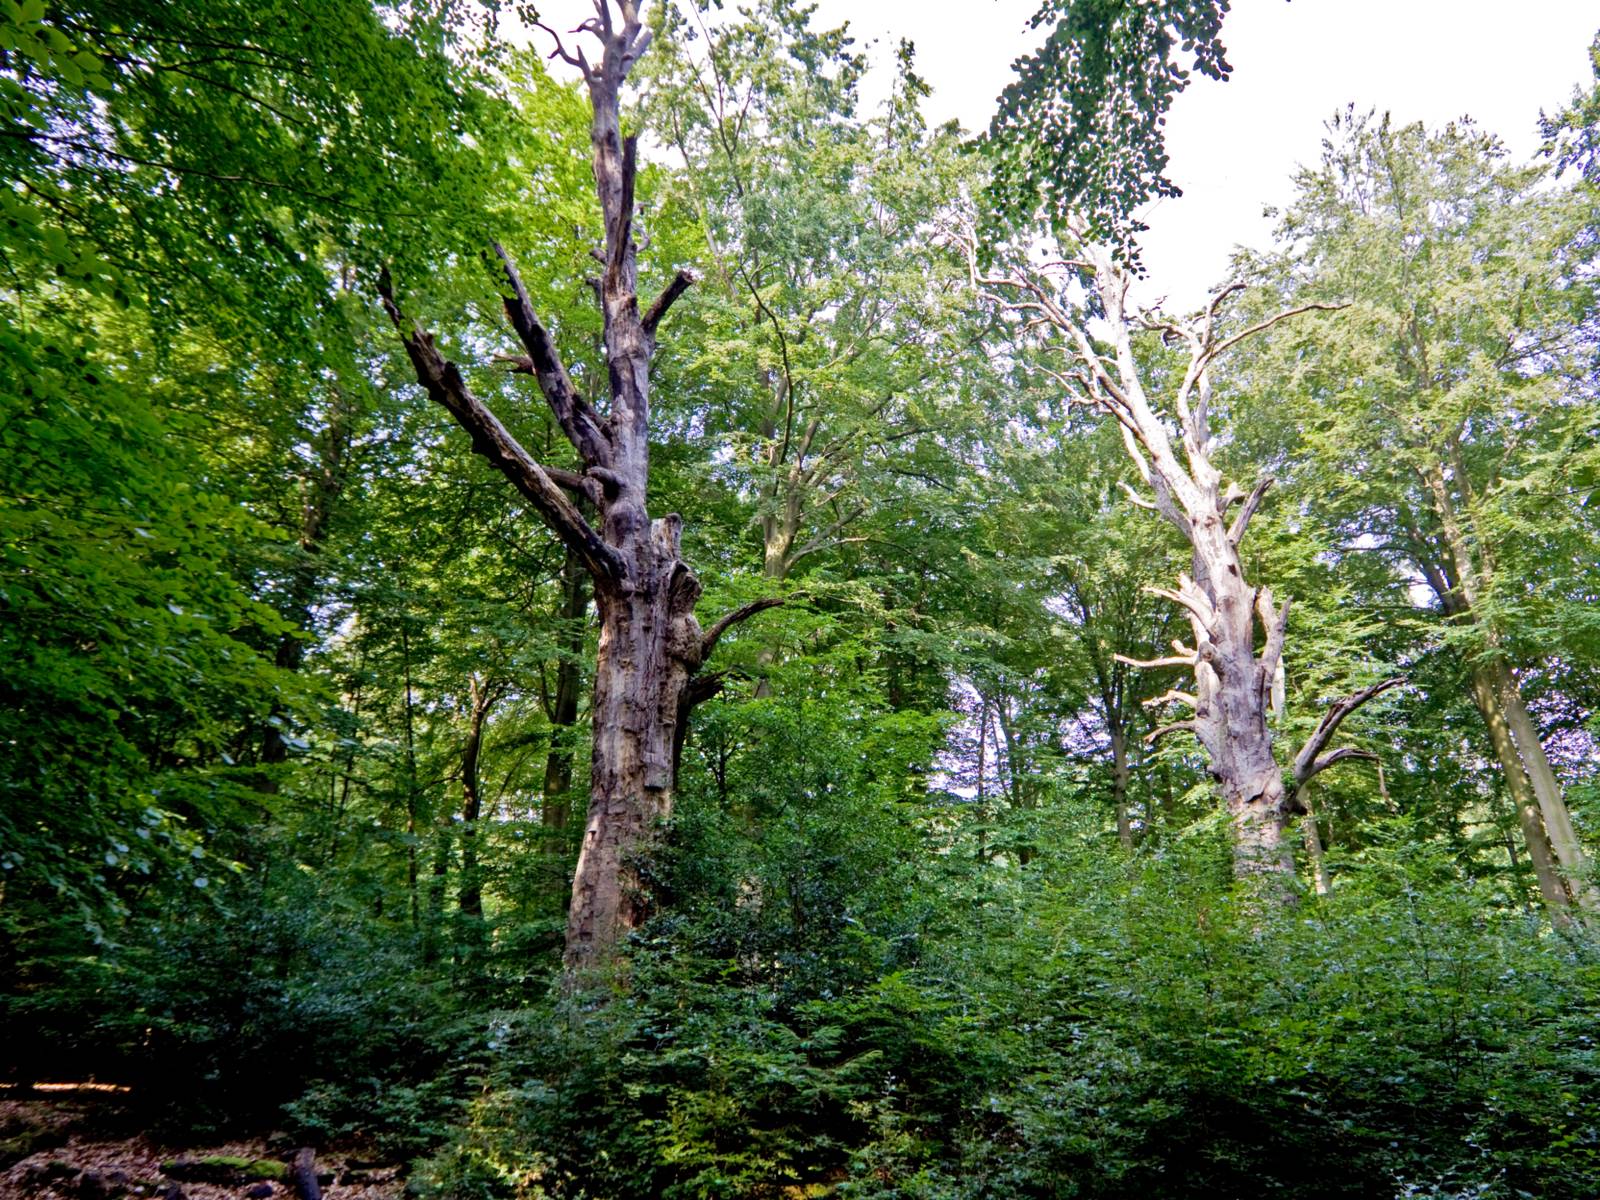 Wald, der Blick konzentriert sich auf zwei alte, knorrige Bäume mit wenig Laub, vielleicht sind sie bereits abgestorben.